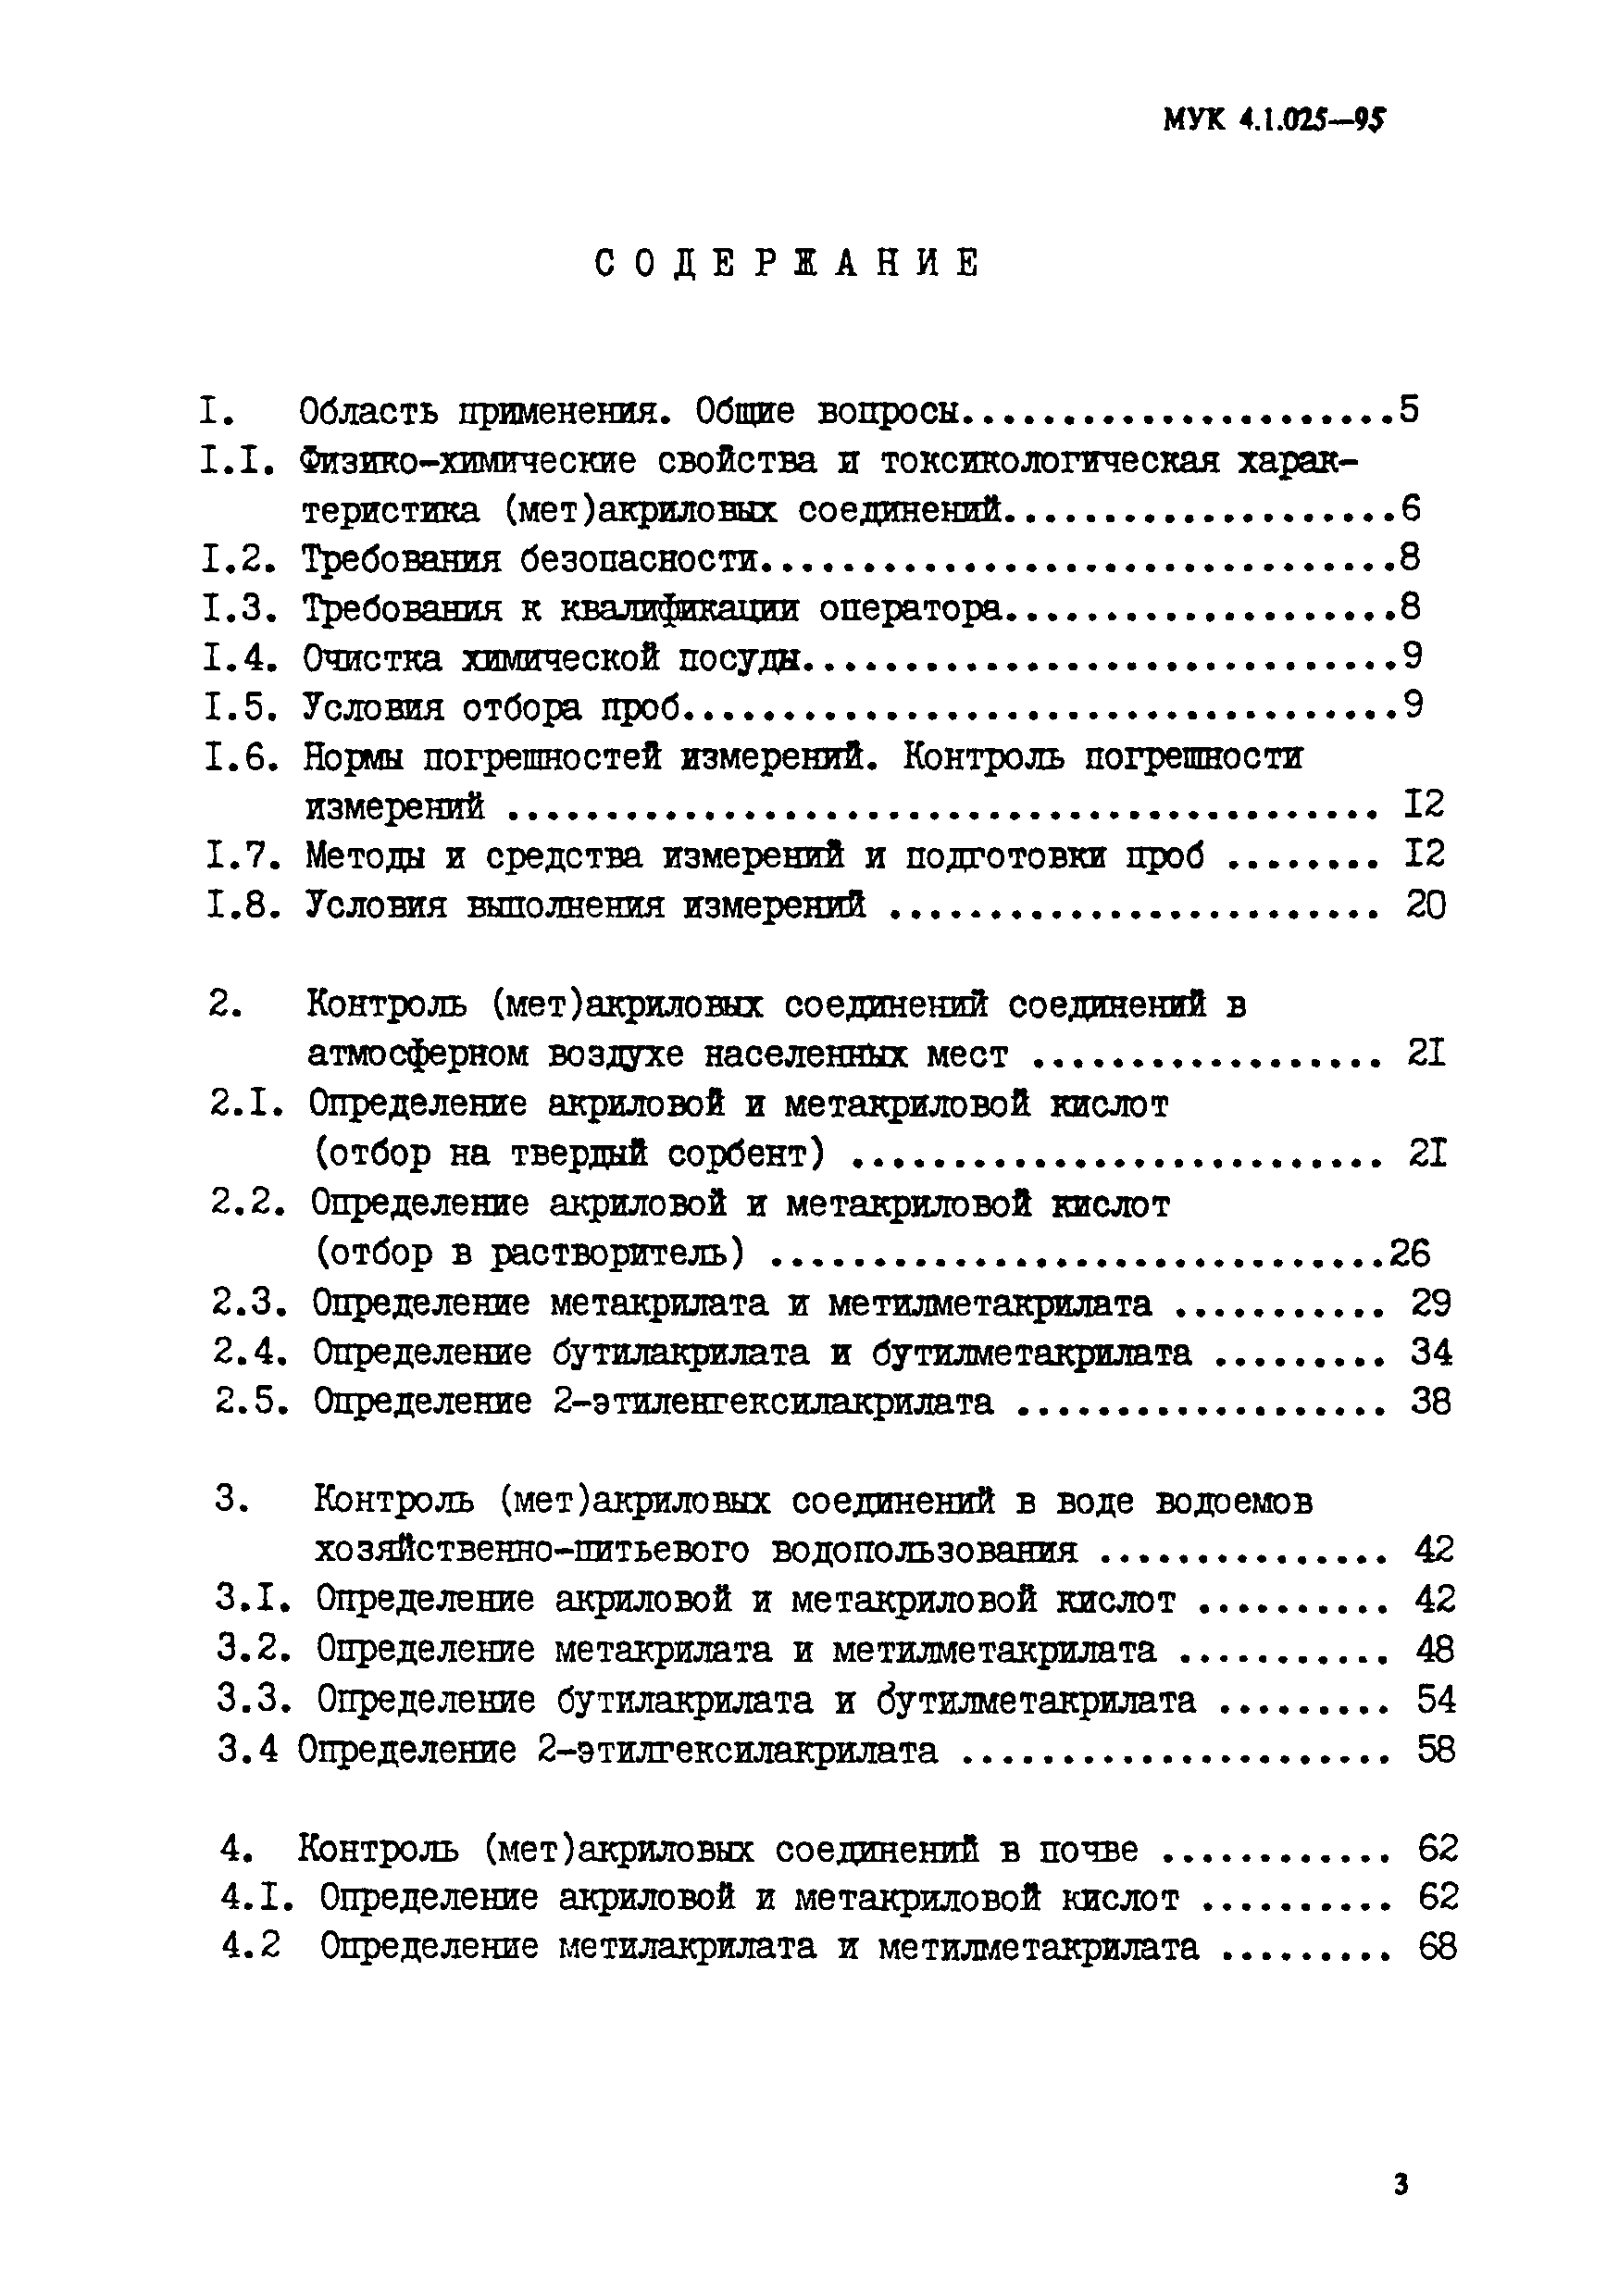 МУК 4.1.025-95